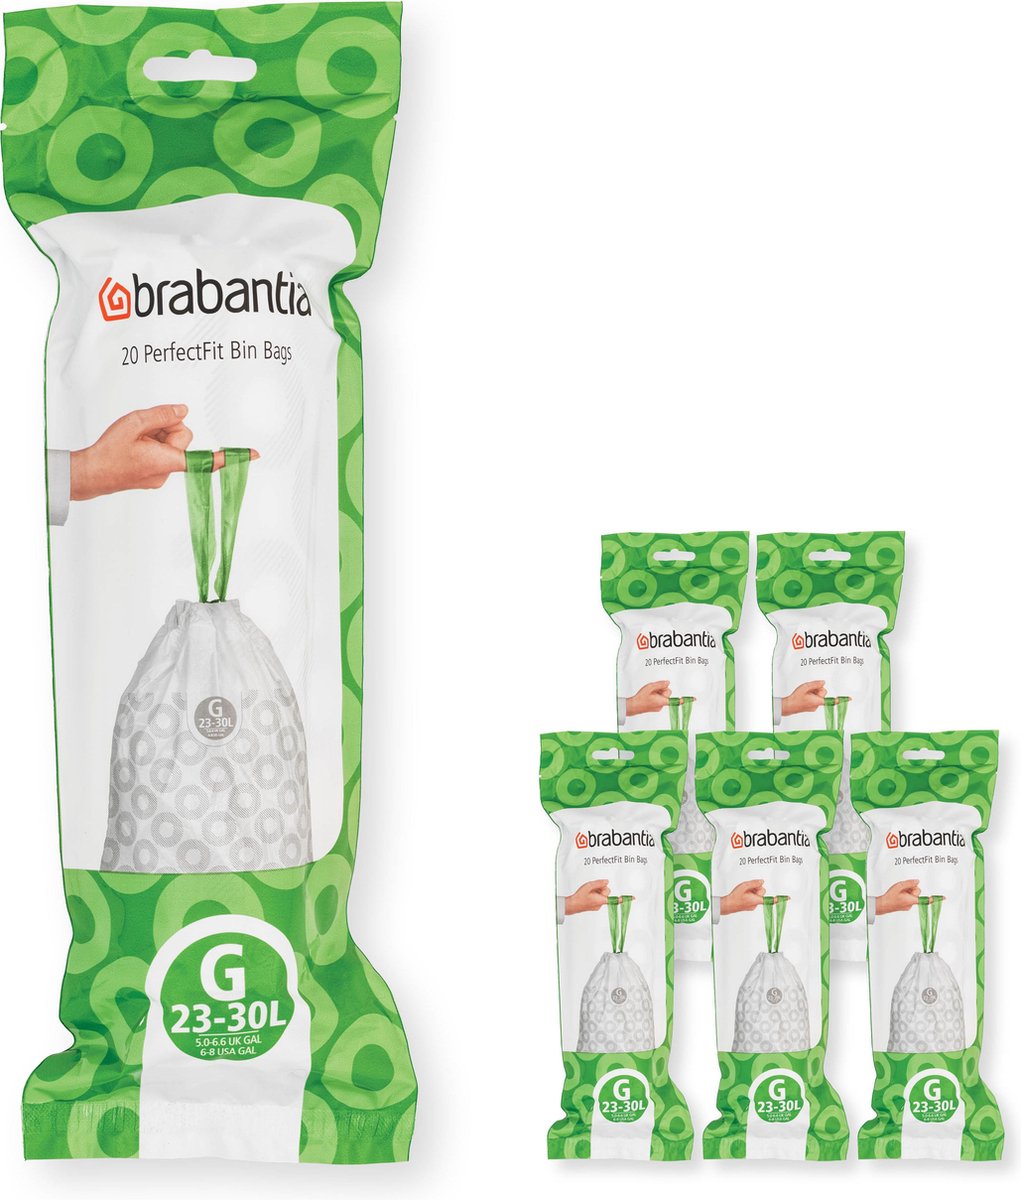 Brabantia PerfectFit sac poubelle avec fermeture code G, 23-30